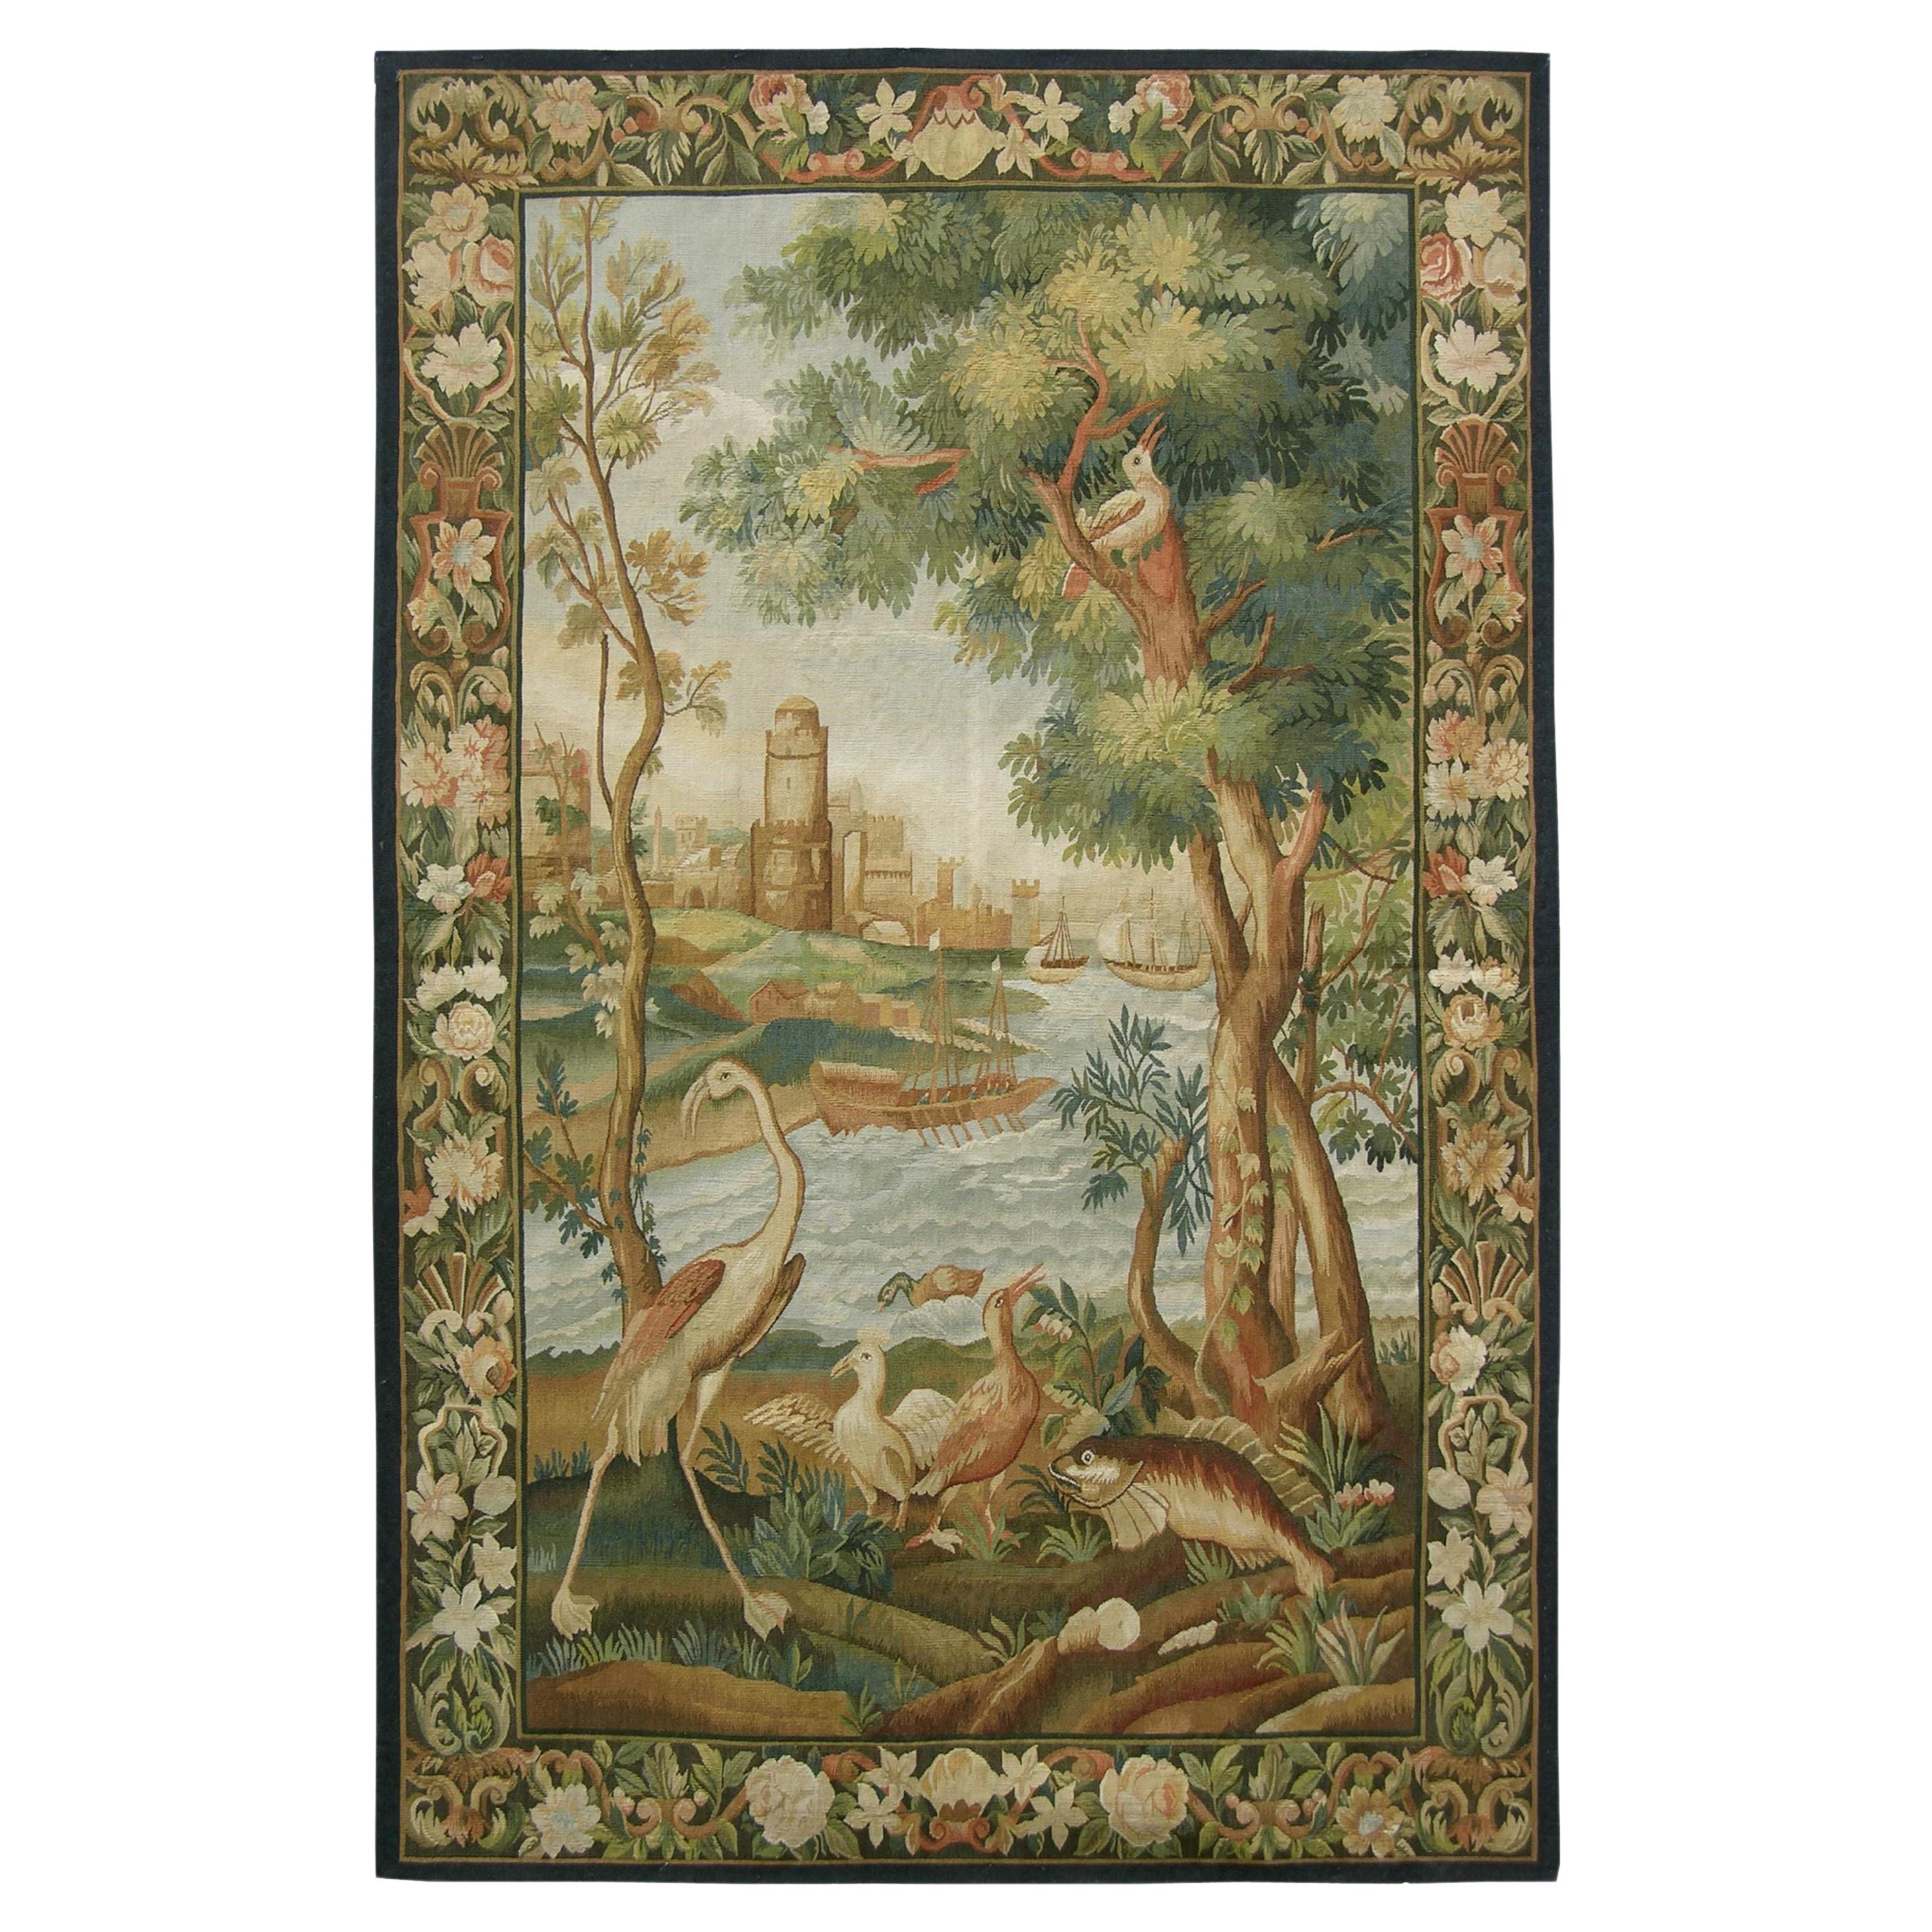 Vintage Tapestry Depicting Wildlife 6'2" X 4'2"